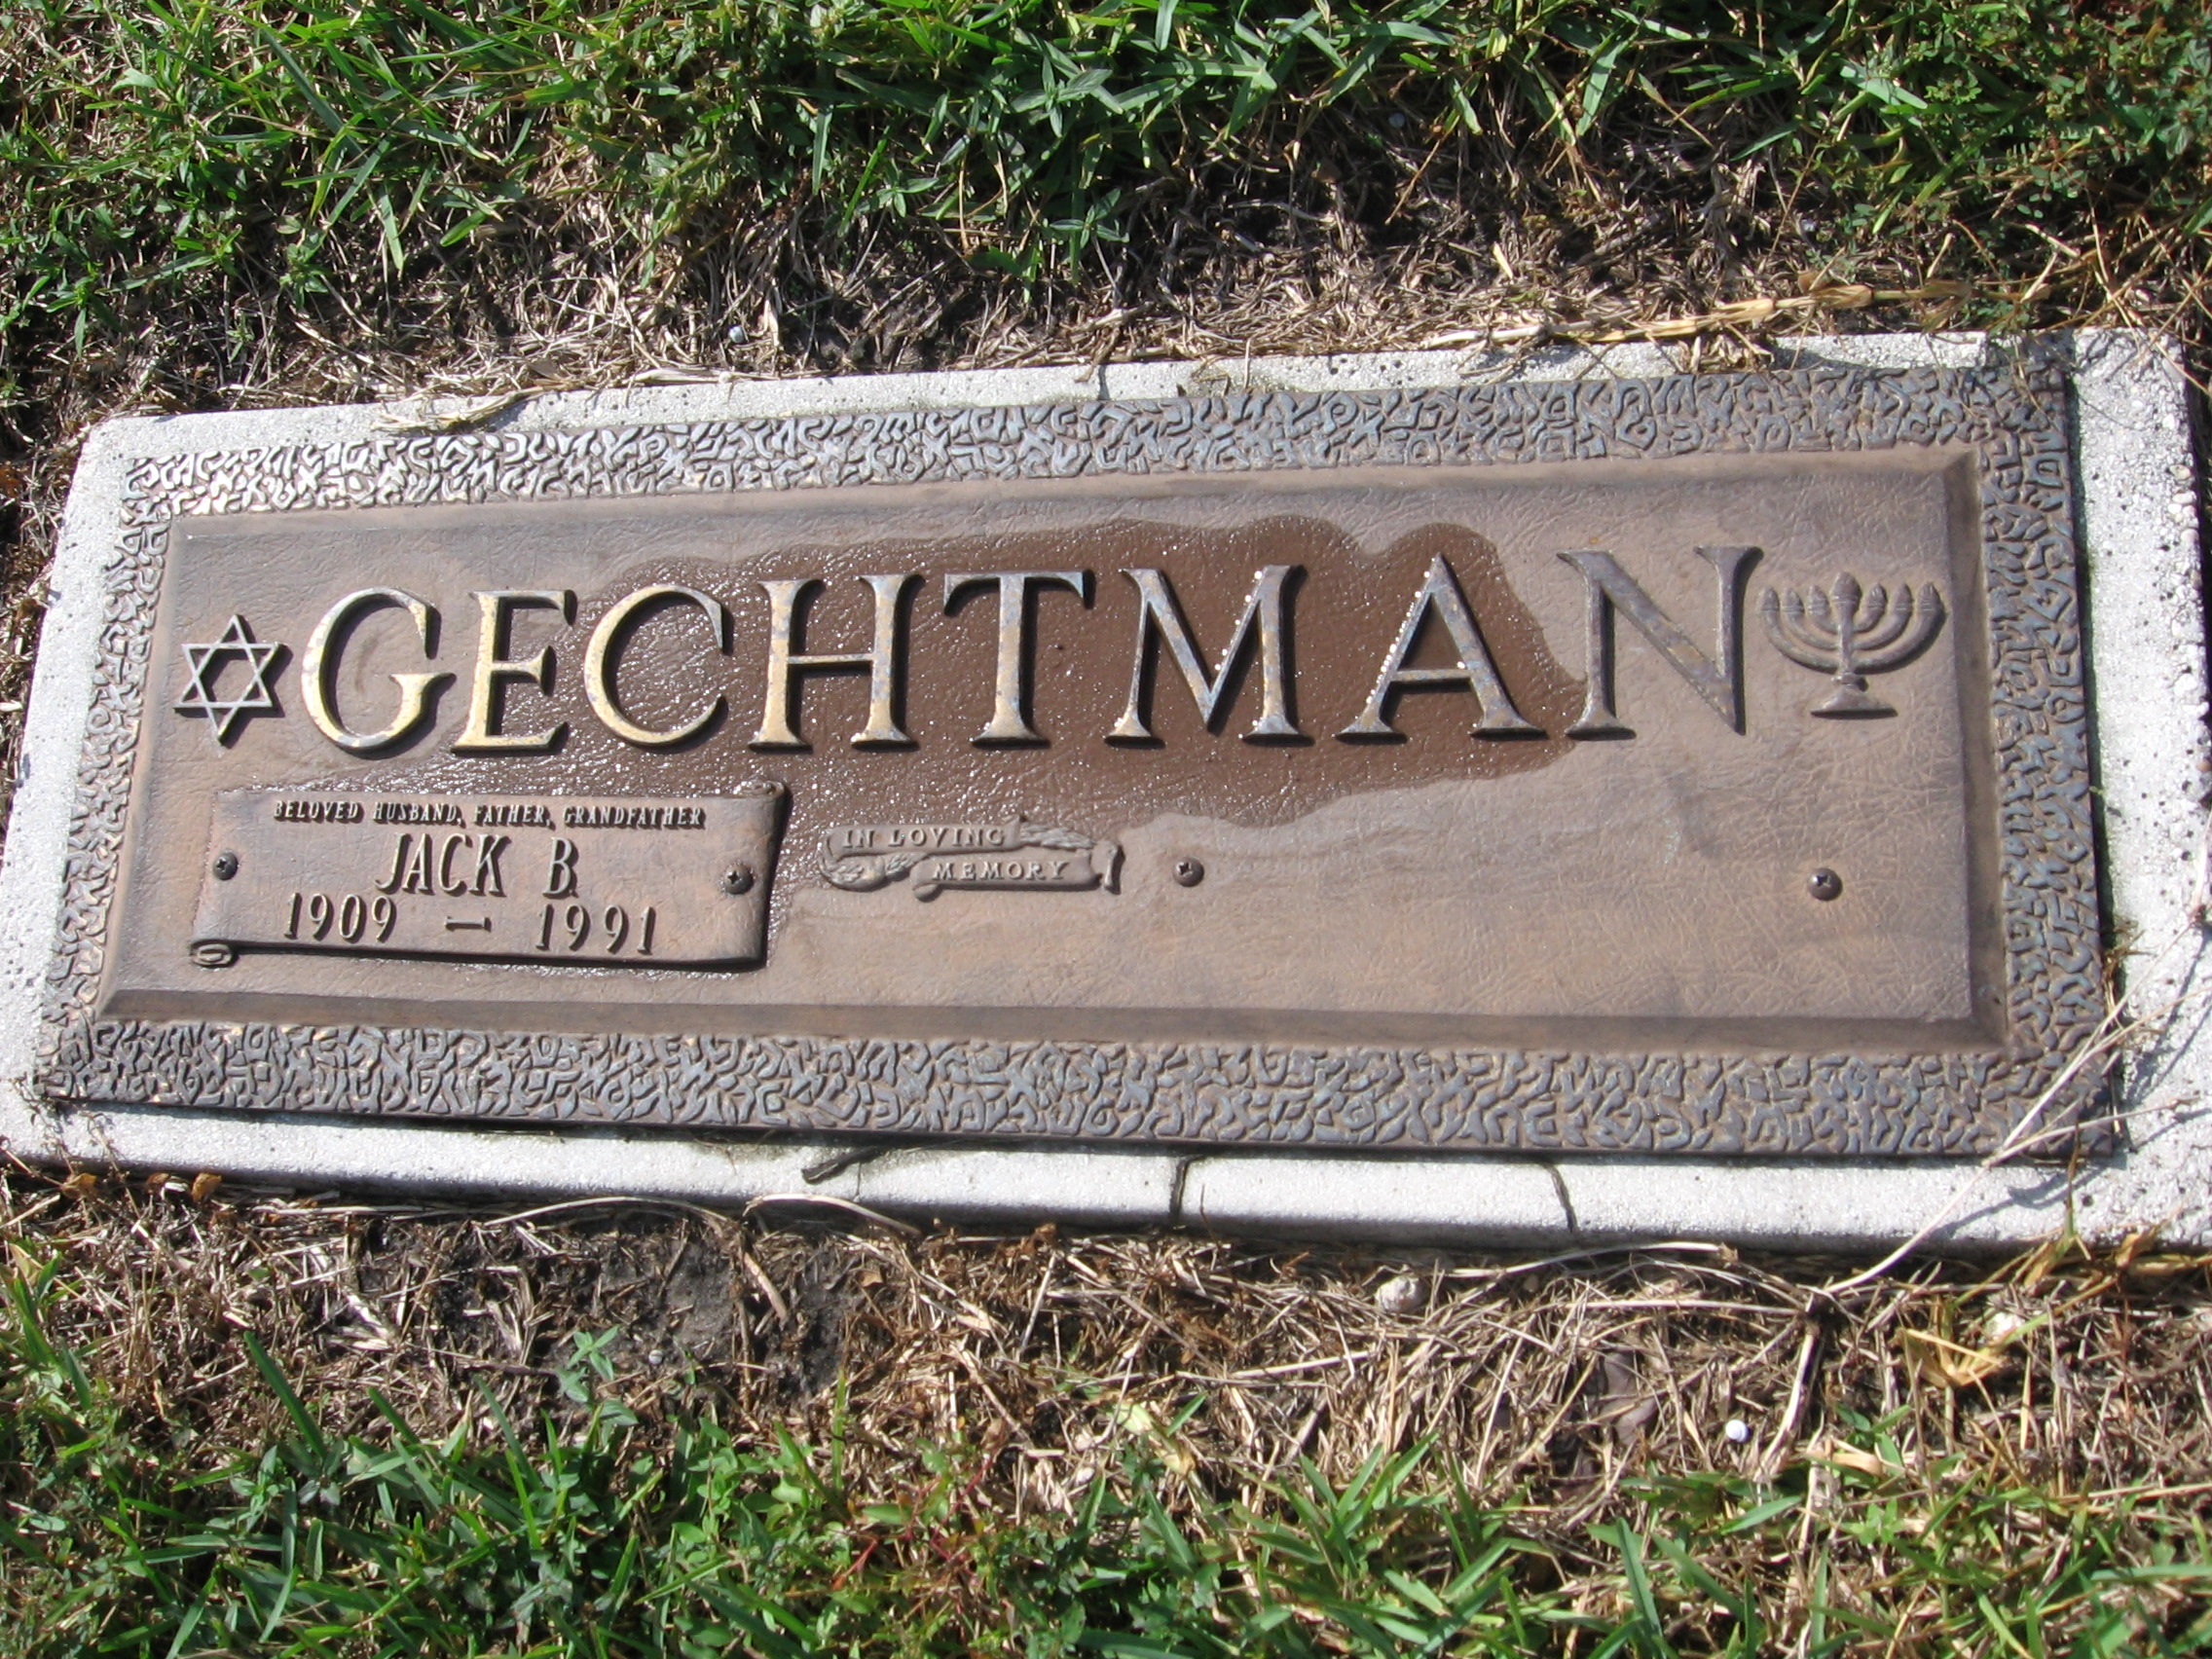 Jack B Gechtman